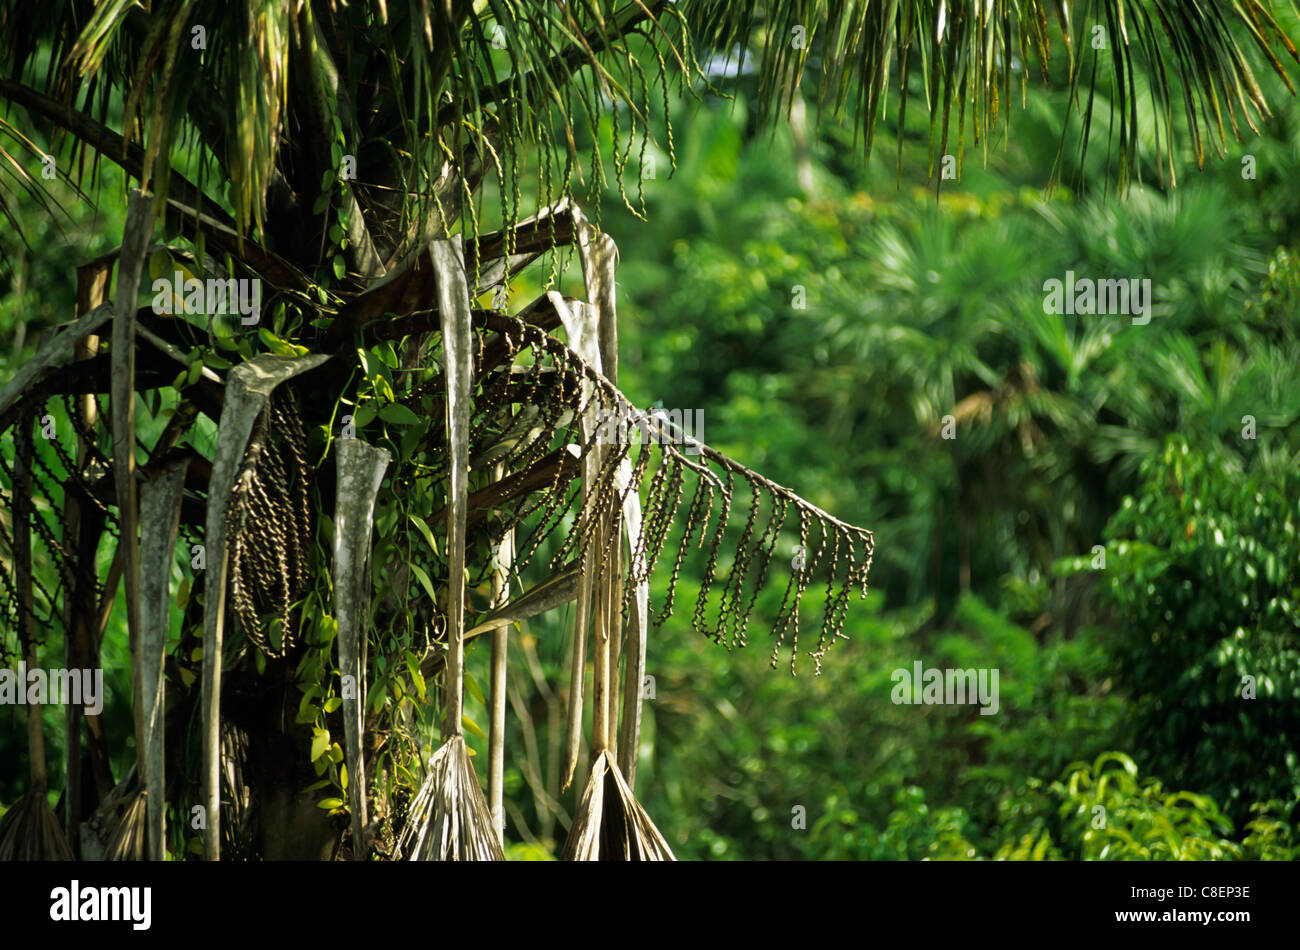 L'état d'Amapá, au Brésil. Palmier de plantes grimpantes et de minuscules oiseaux martin-pêcheur sur une branche. Banque D'Images